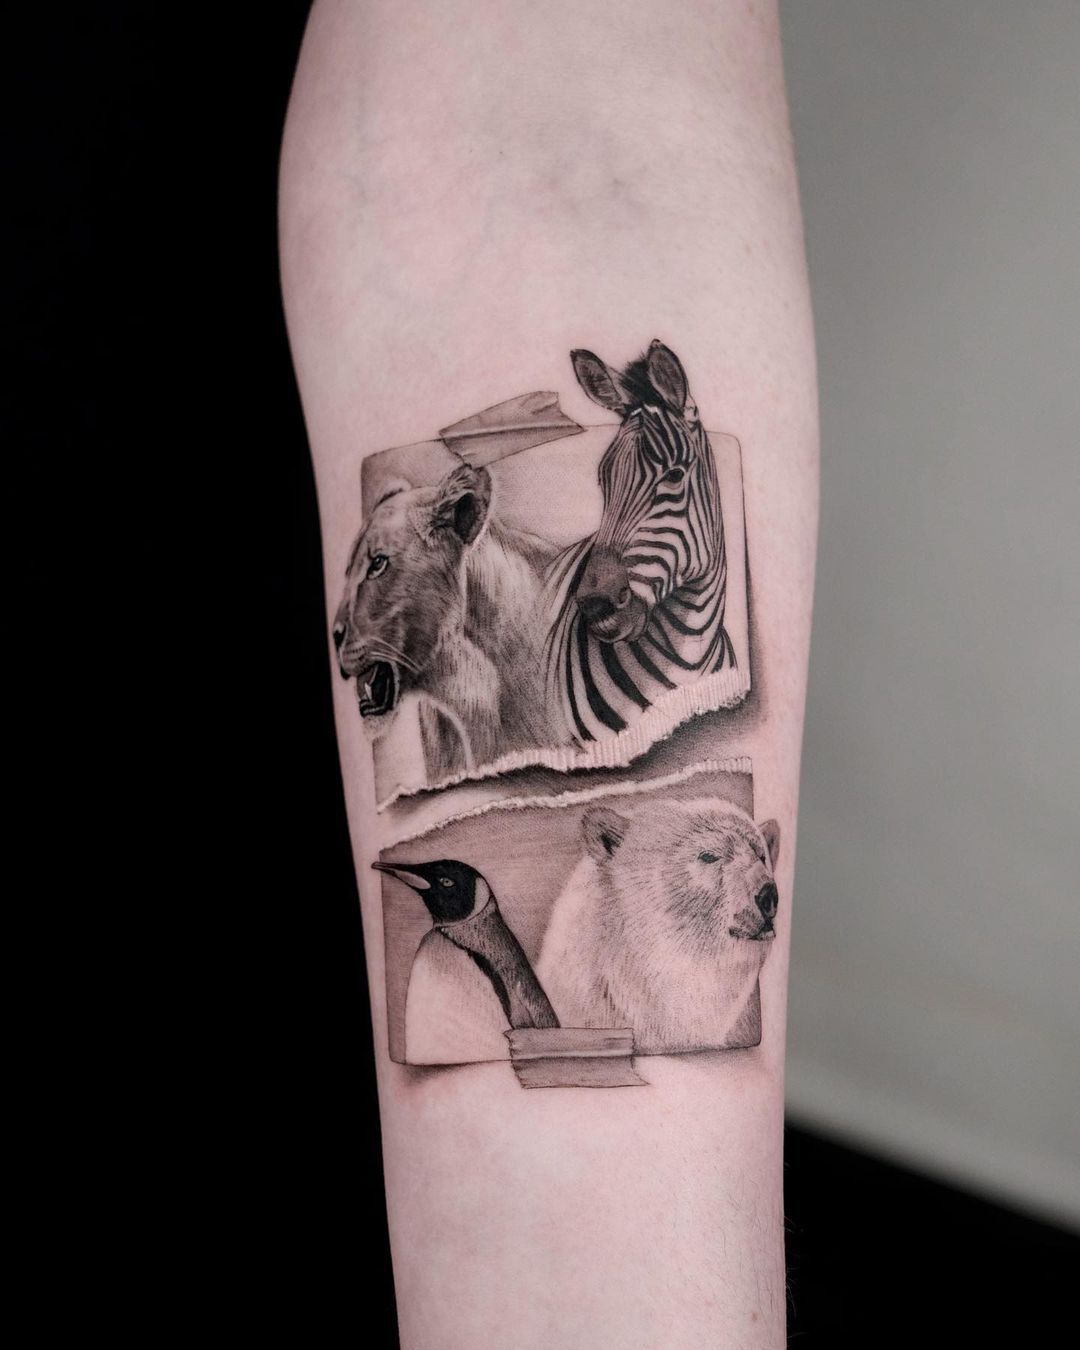 Amazing zebra tattoos by jankyjake tattoos